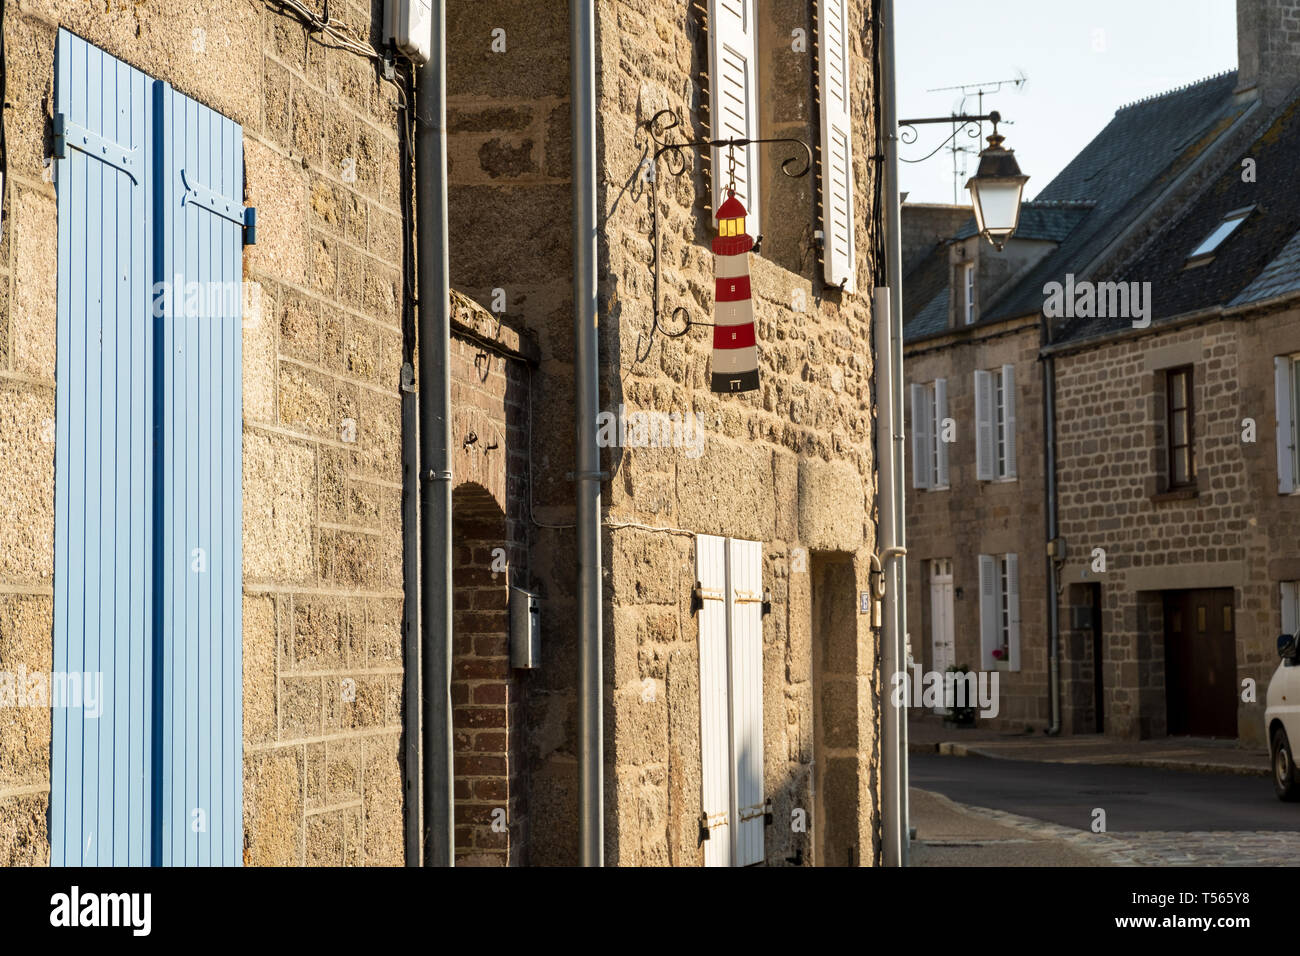 Barfleur, Frankreich - 29 August 2018: Street View in Barfleur, Dies ist eines der schönsten Dörfer in Frankreich Stockfoto